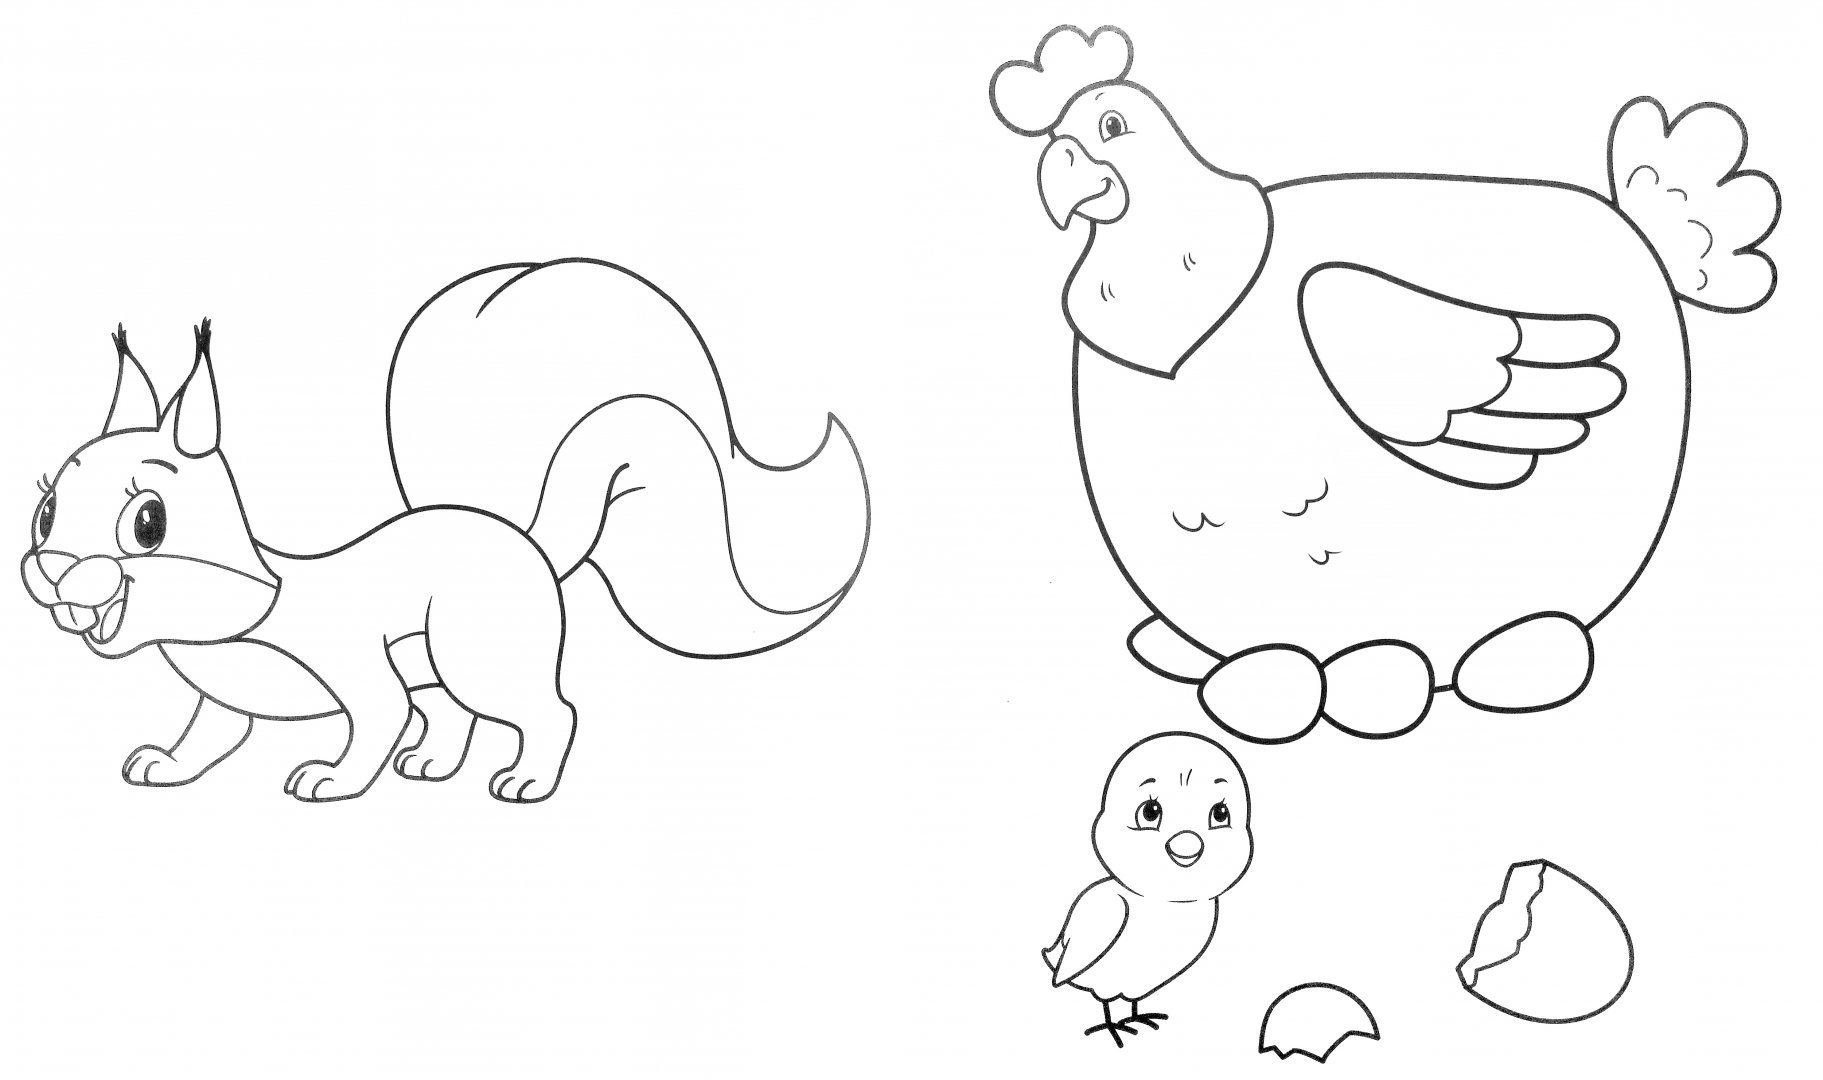 Раскраска 2 на а4. Раскраски животные для детей. Раскраска животных для малышей. Домашние питомцы раскраска для детей. Раскраска животные для детей 3-4 лет.